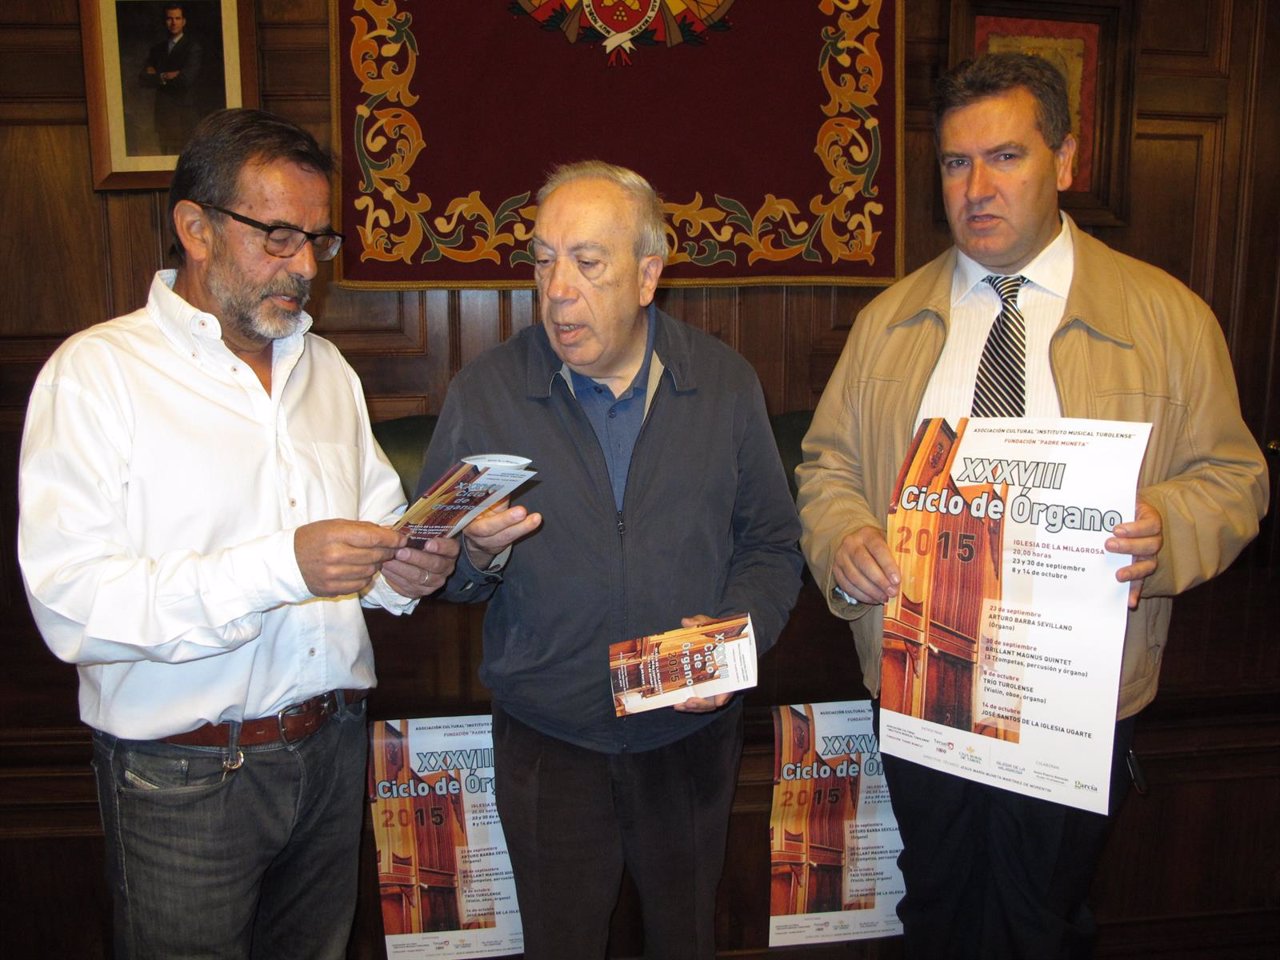 Presentación del XXXVIII Ciclo de Órgano de Teruel